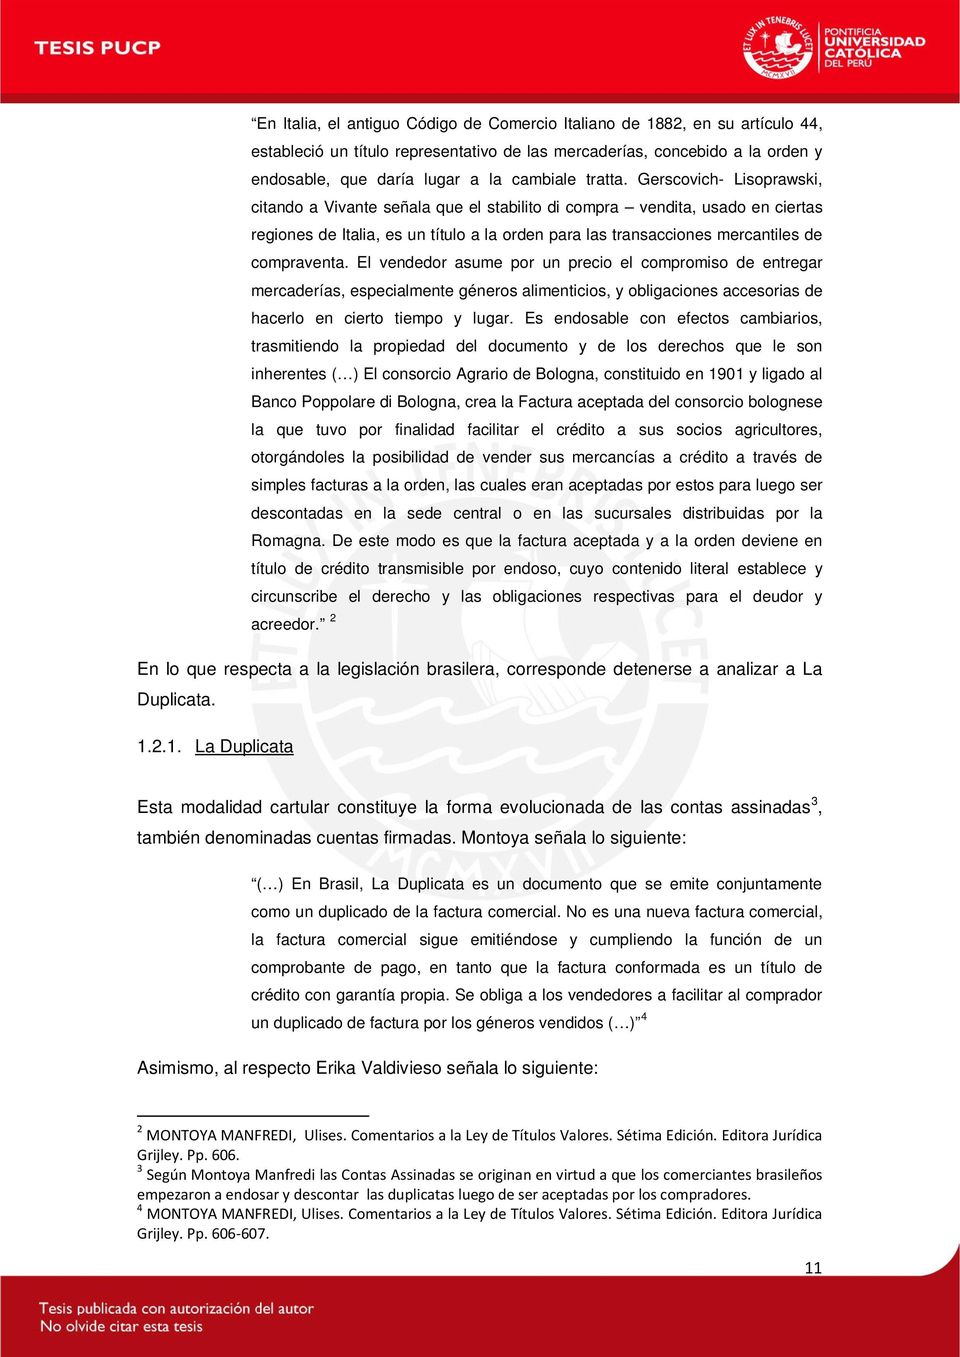 Gerscovich- Lisoprawski, citando a Vivante señala que el stabilito di compra vendita, usado en ciertas regiones de Italia, es un título a la orden para las transacciones mercantiles de compraventa.